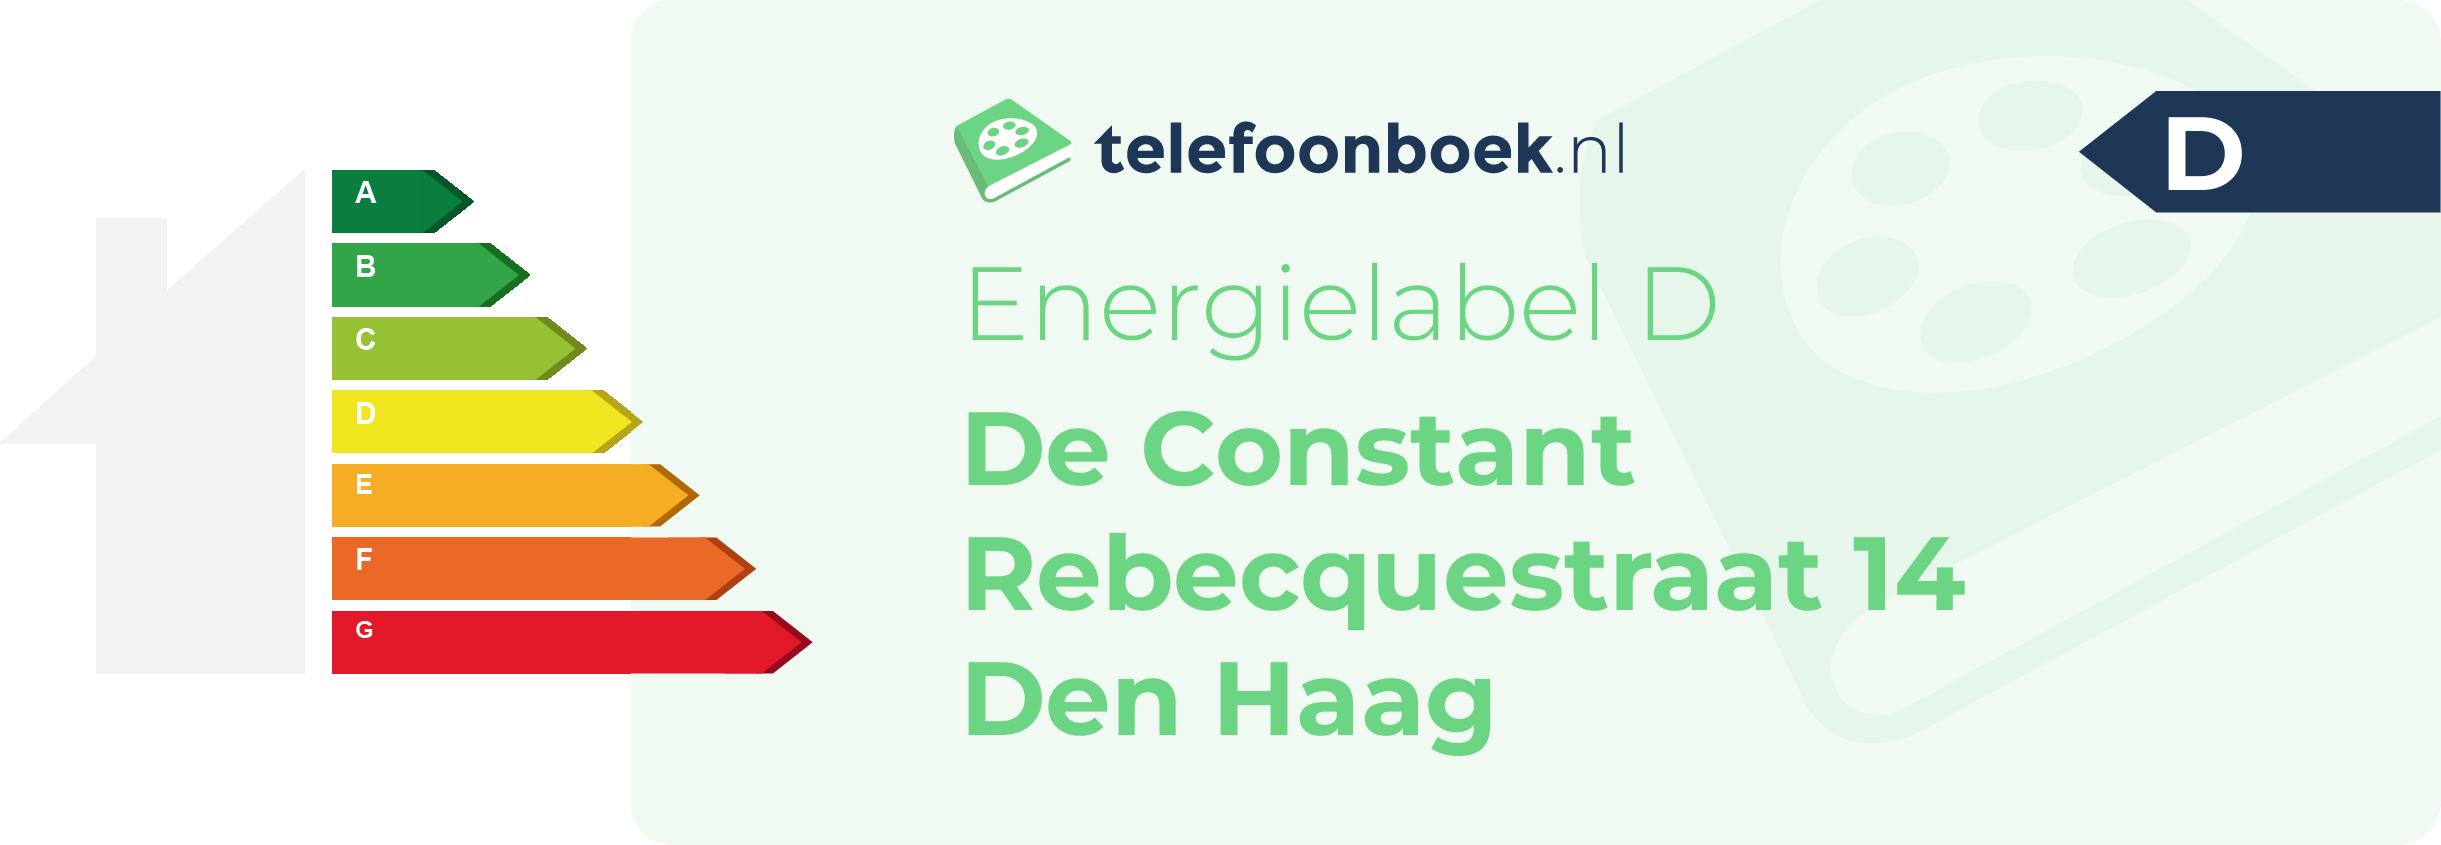 Energielabel De Constant Rebecquestraat 14 Den Haag